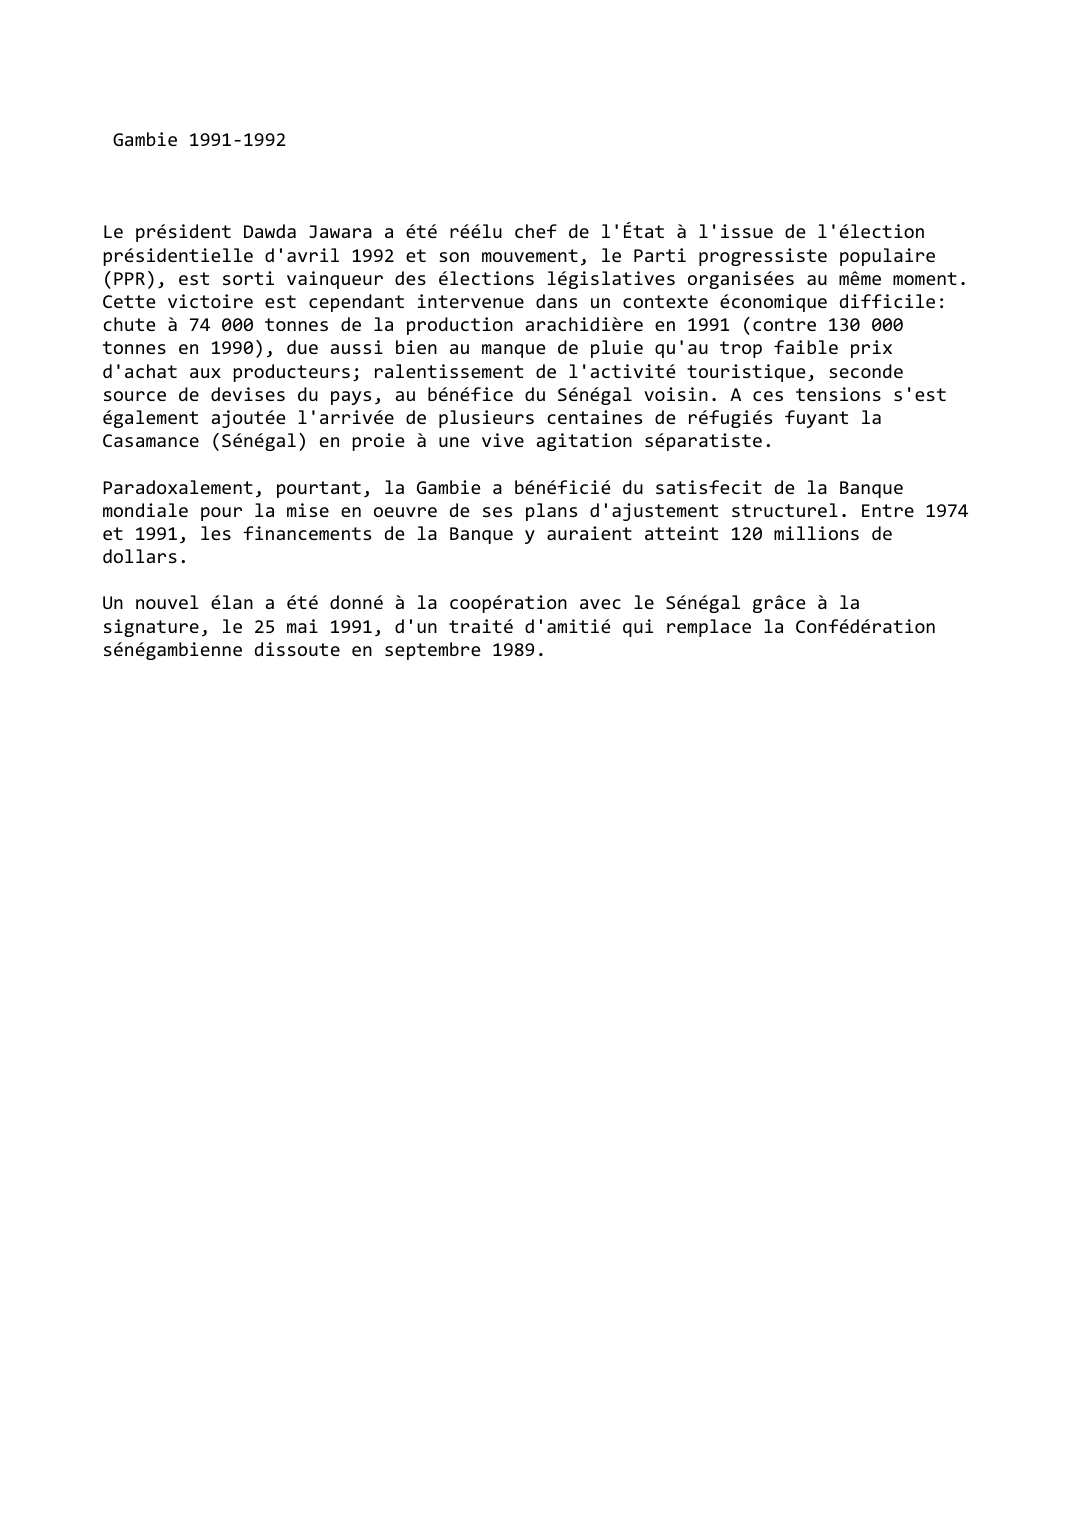 Prévisualisation du document Gambie (1991-1992)